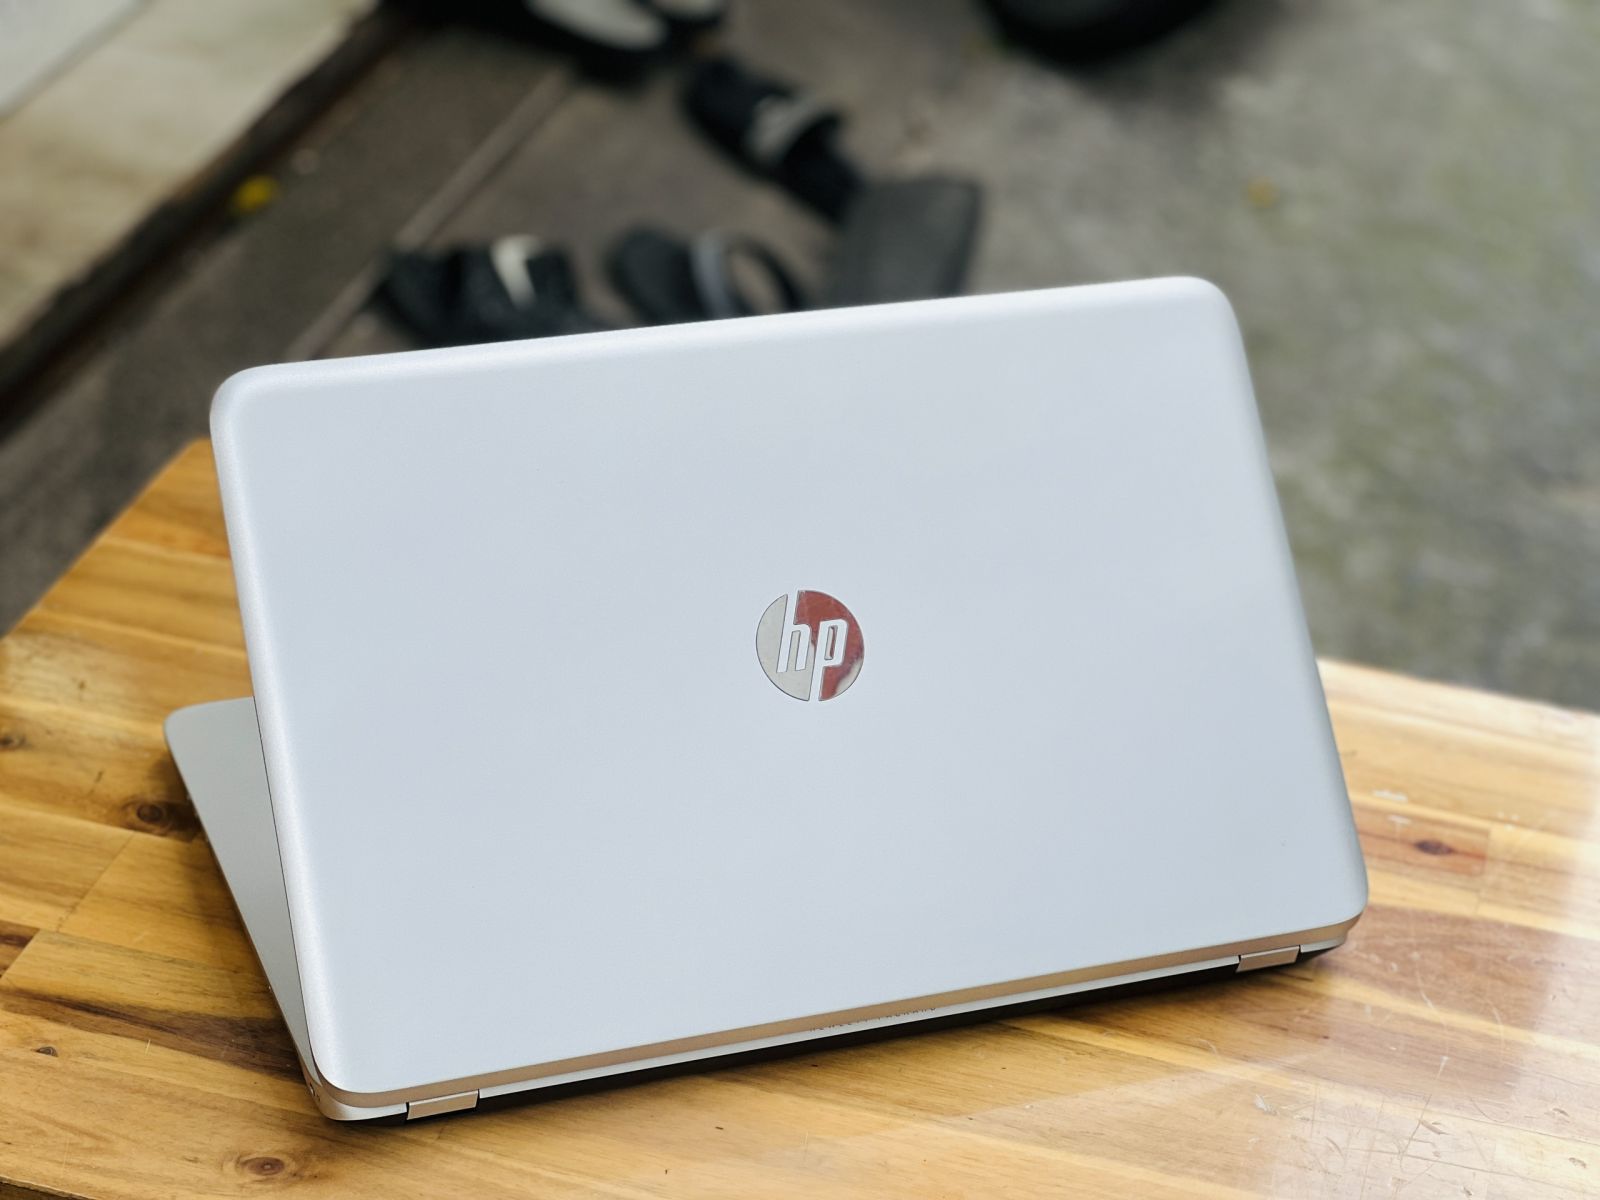 Laptop HP Envy 17 I5 cũ giá rẻ